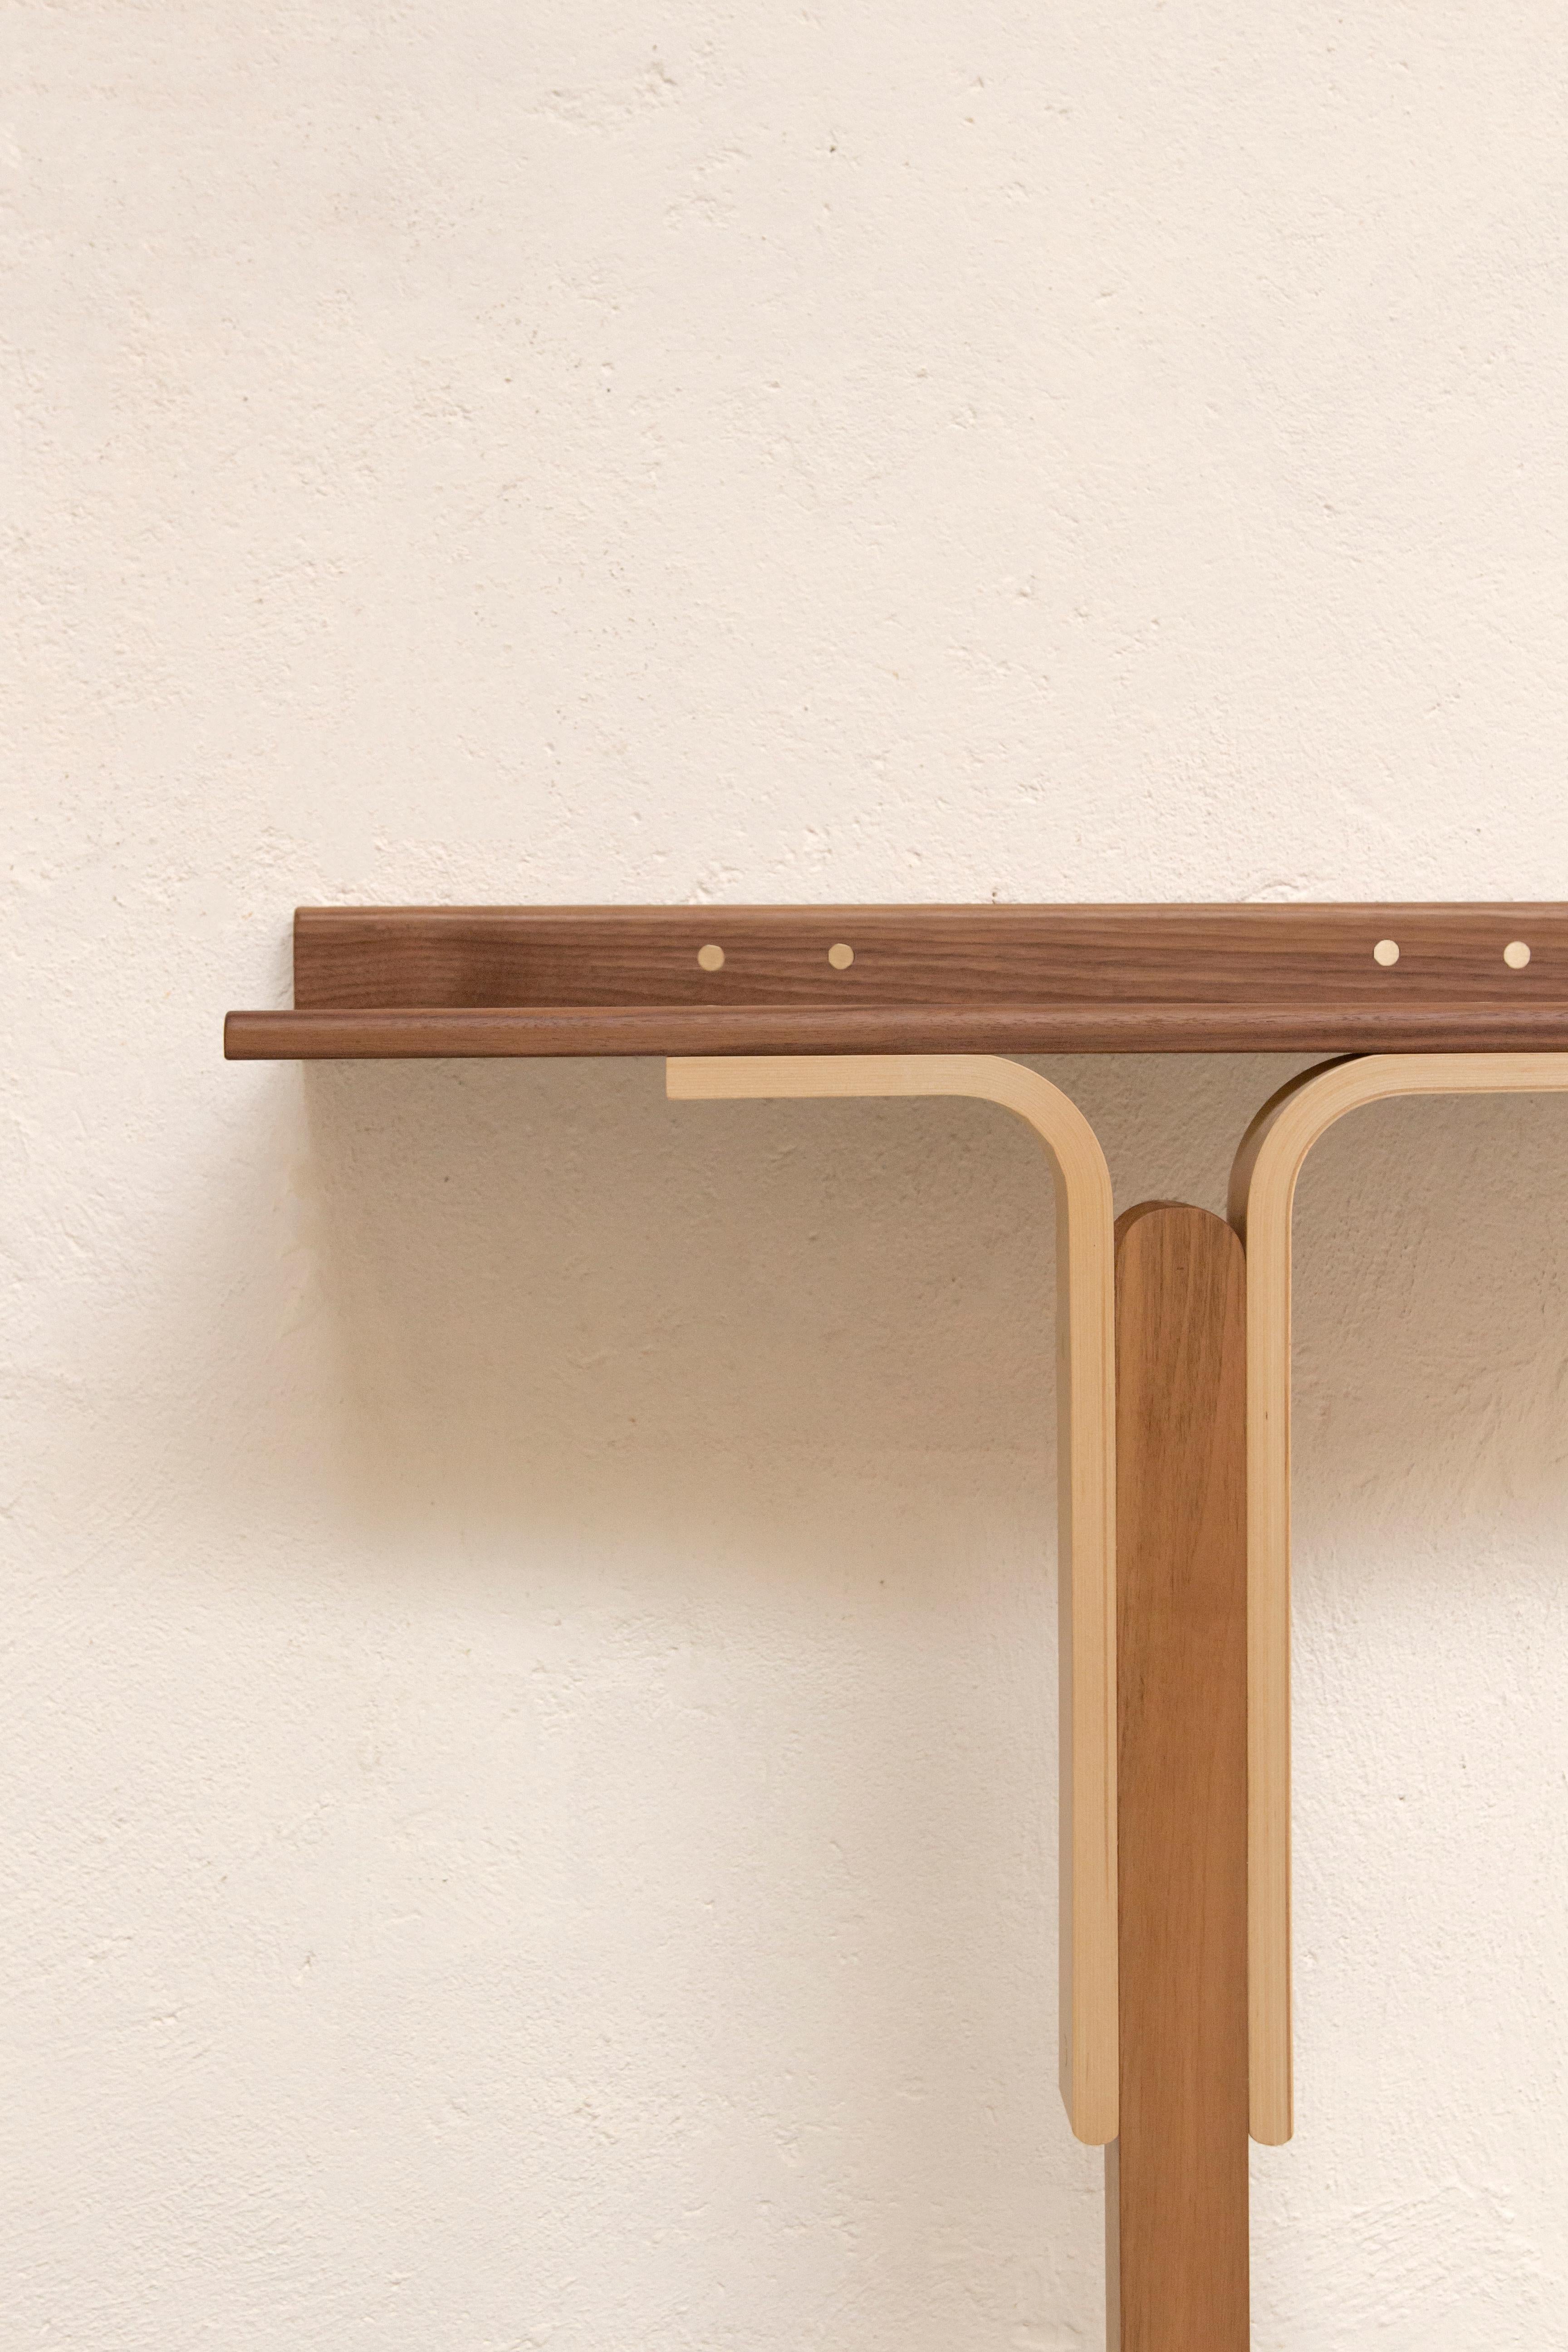 L'élégante table console Rennie d'Ilaria Bianchi, qui date du 21e siècle, est fabriquée à la main en bois massif de noyer et de frêne, avec une menuiserie en laiton poli. Les meubles sont agréablement sculptés dans une belle décoration en bois. La